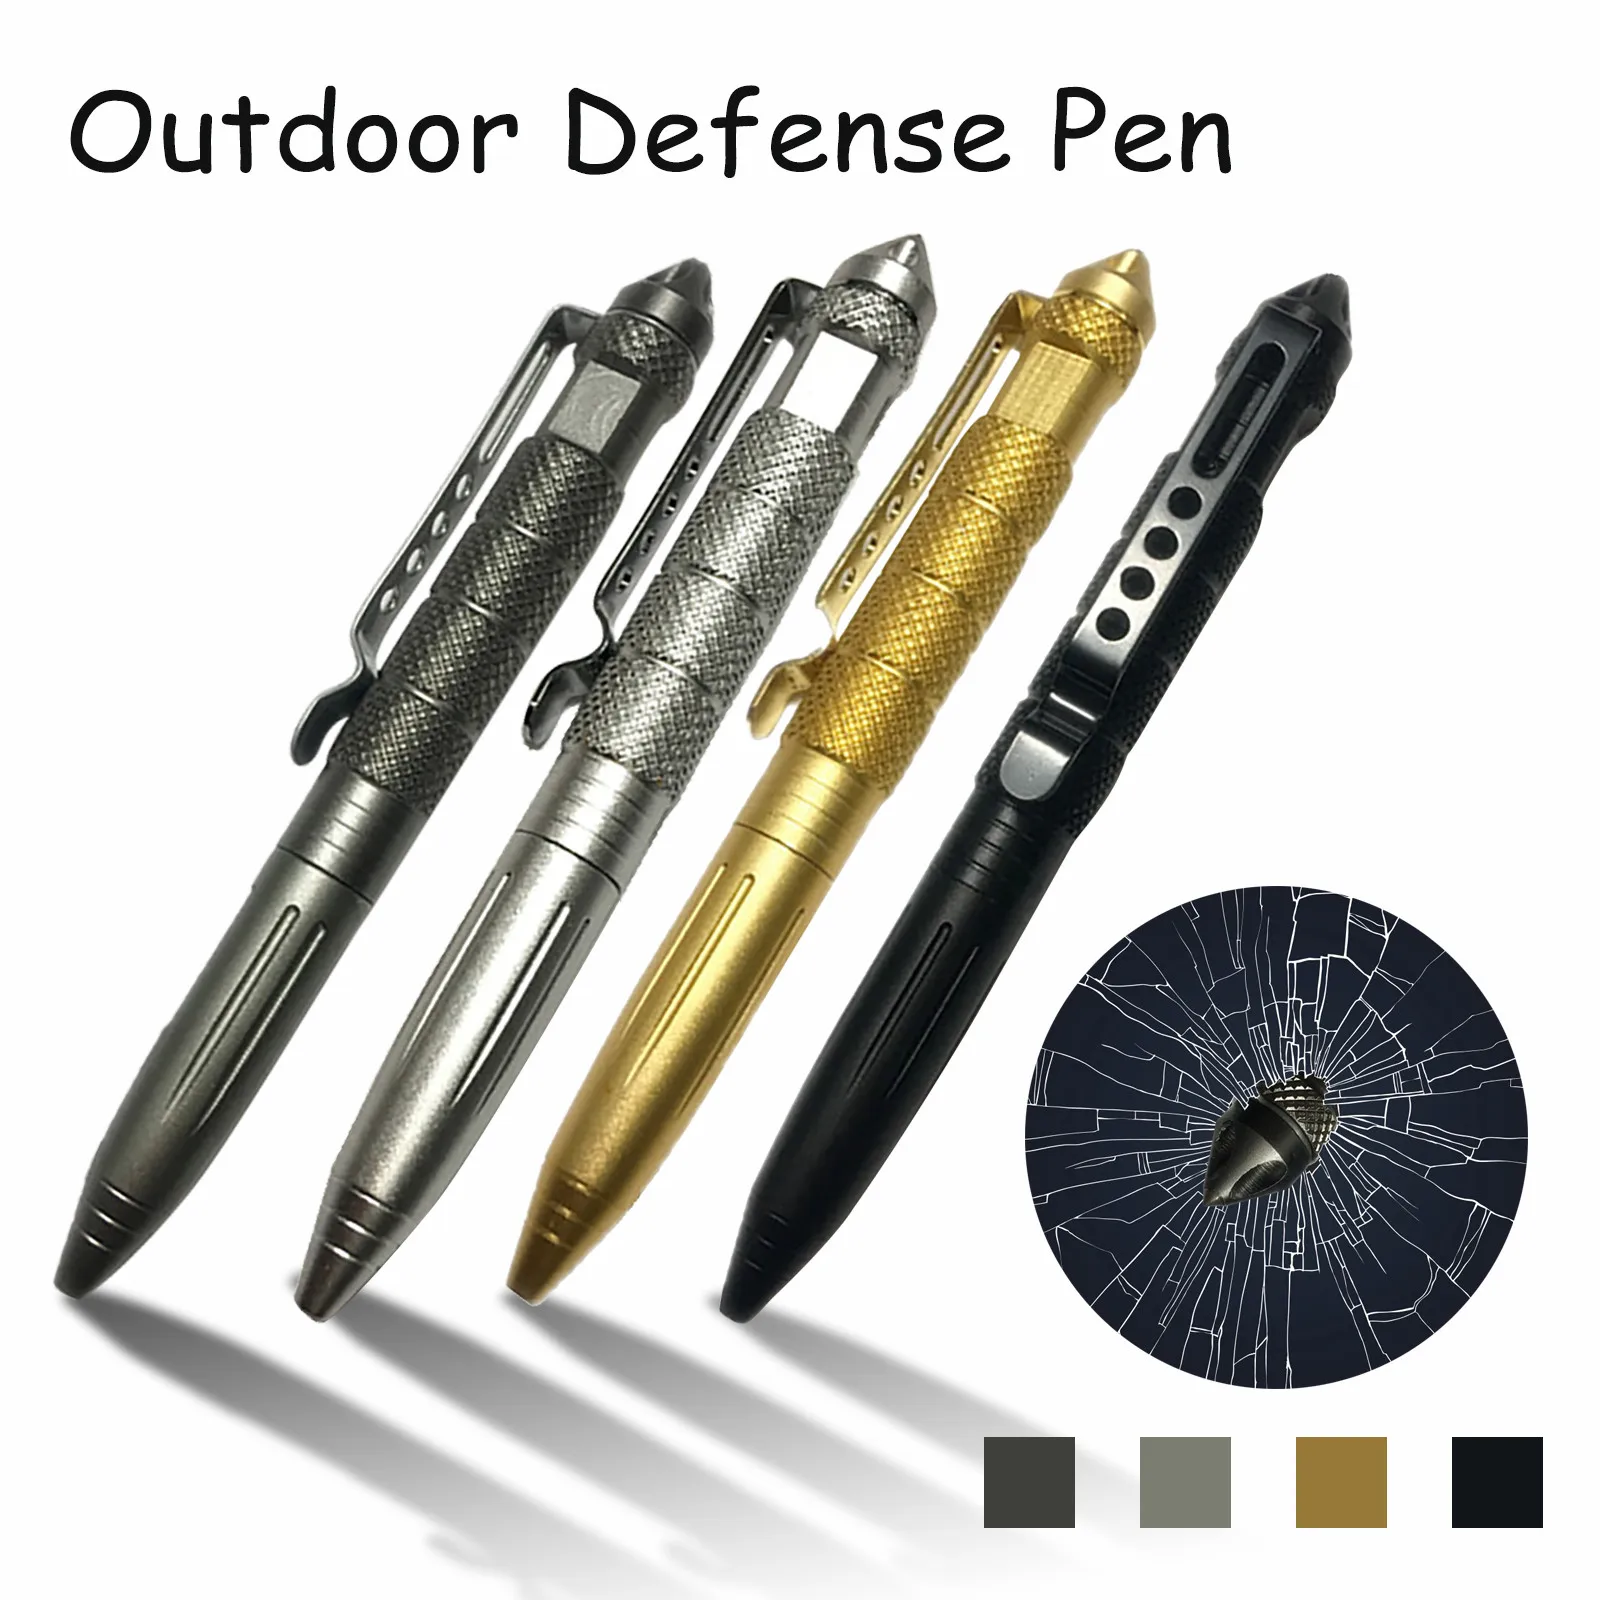 Тактическая ручка Dropshiping Defense, высококачественная алюминиевая противоскользящая портативная ручка для самообороны, стальной набор для выживания, разбивающий стекло